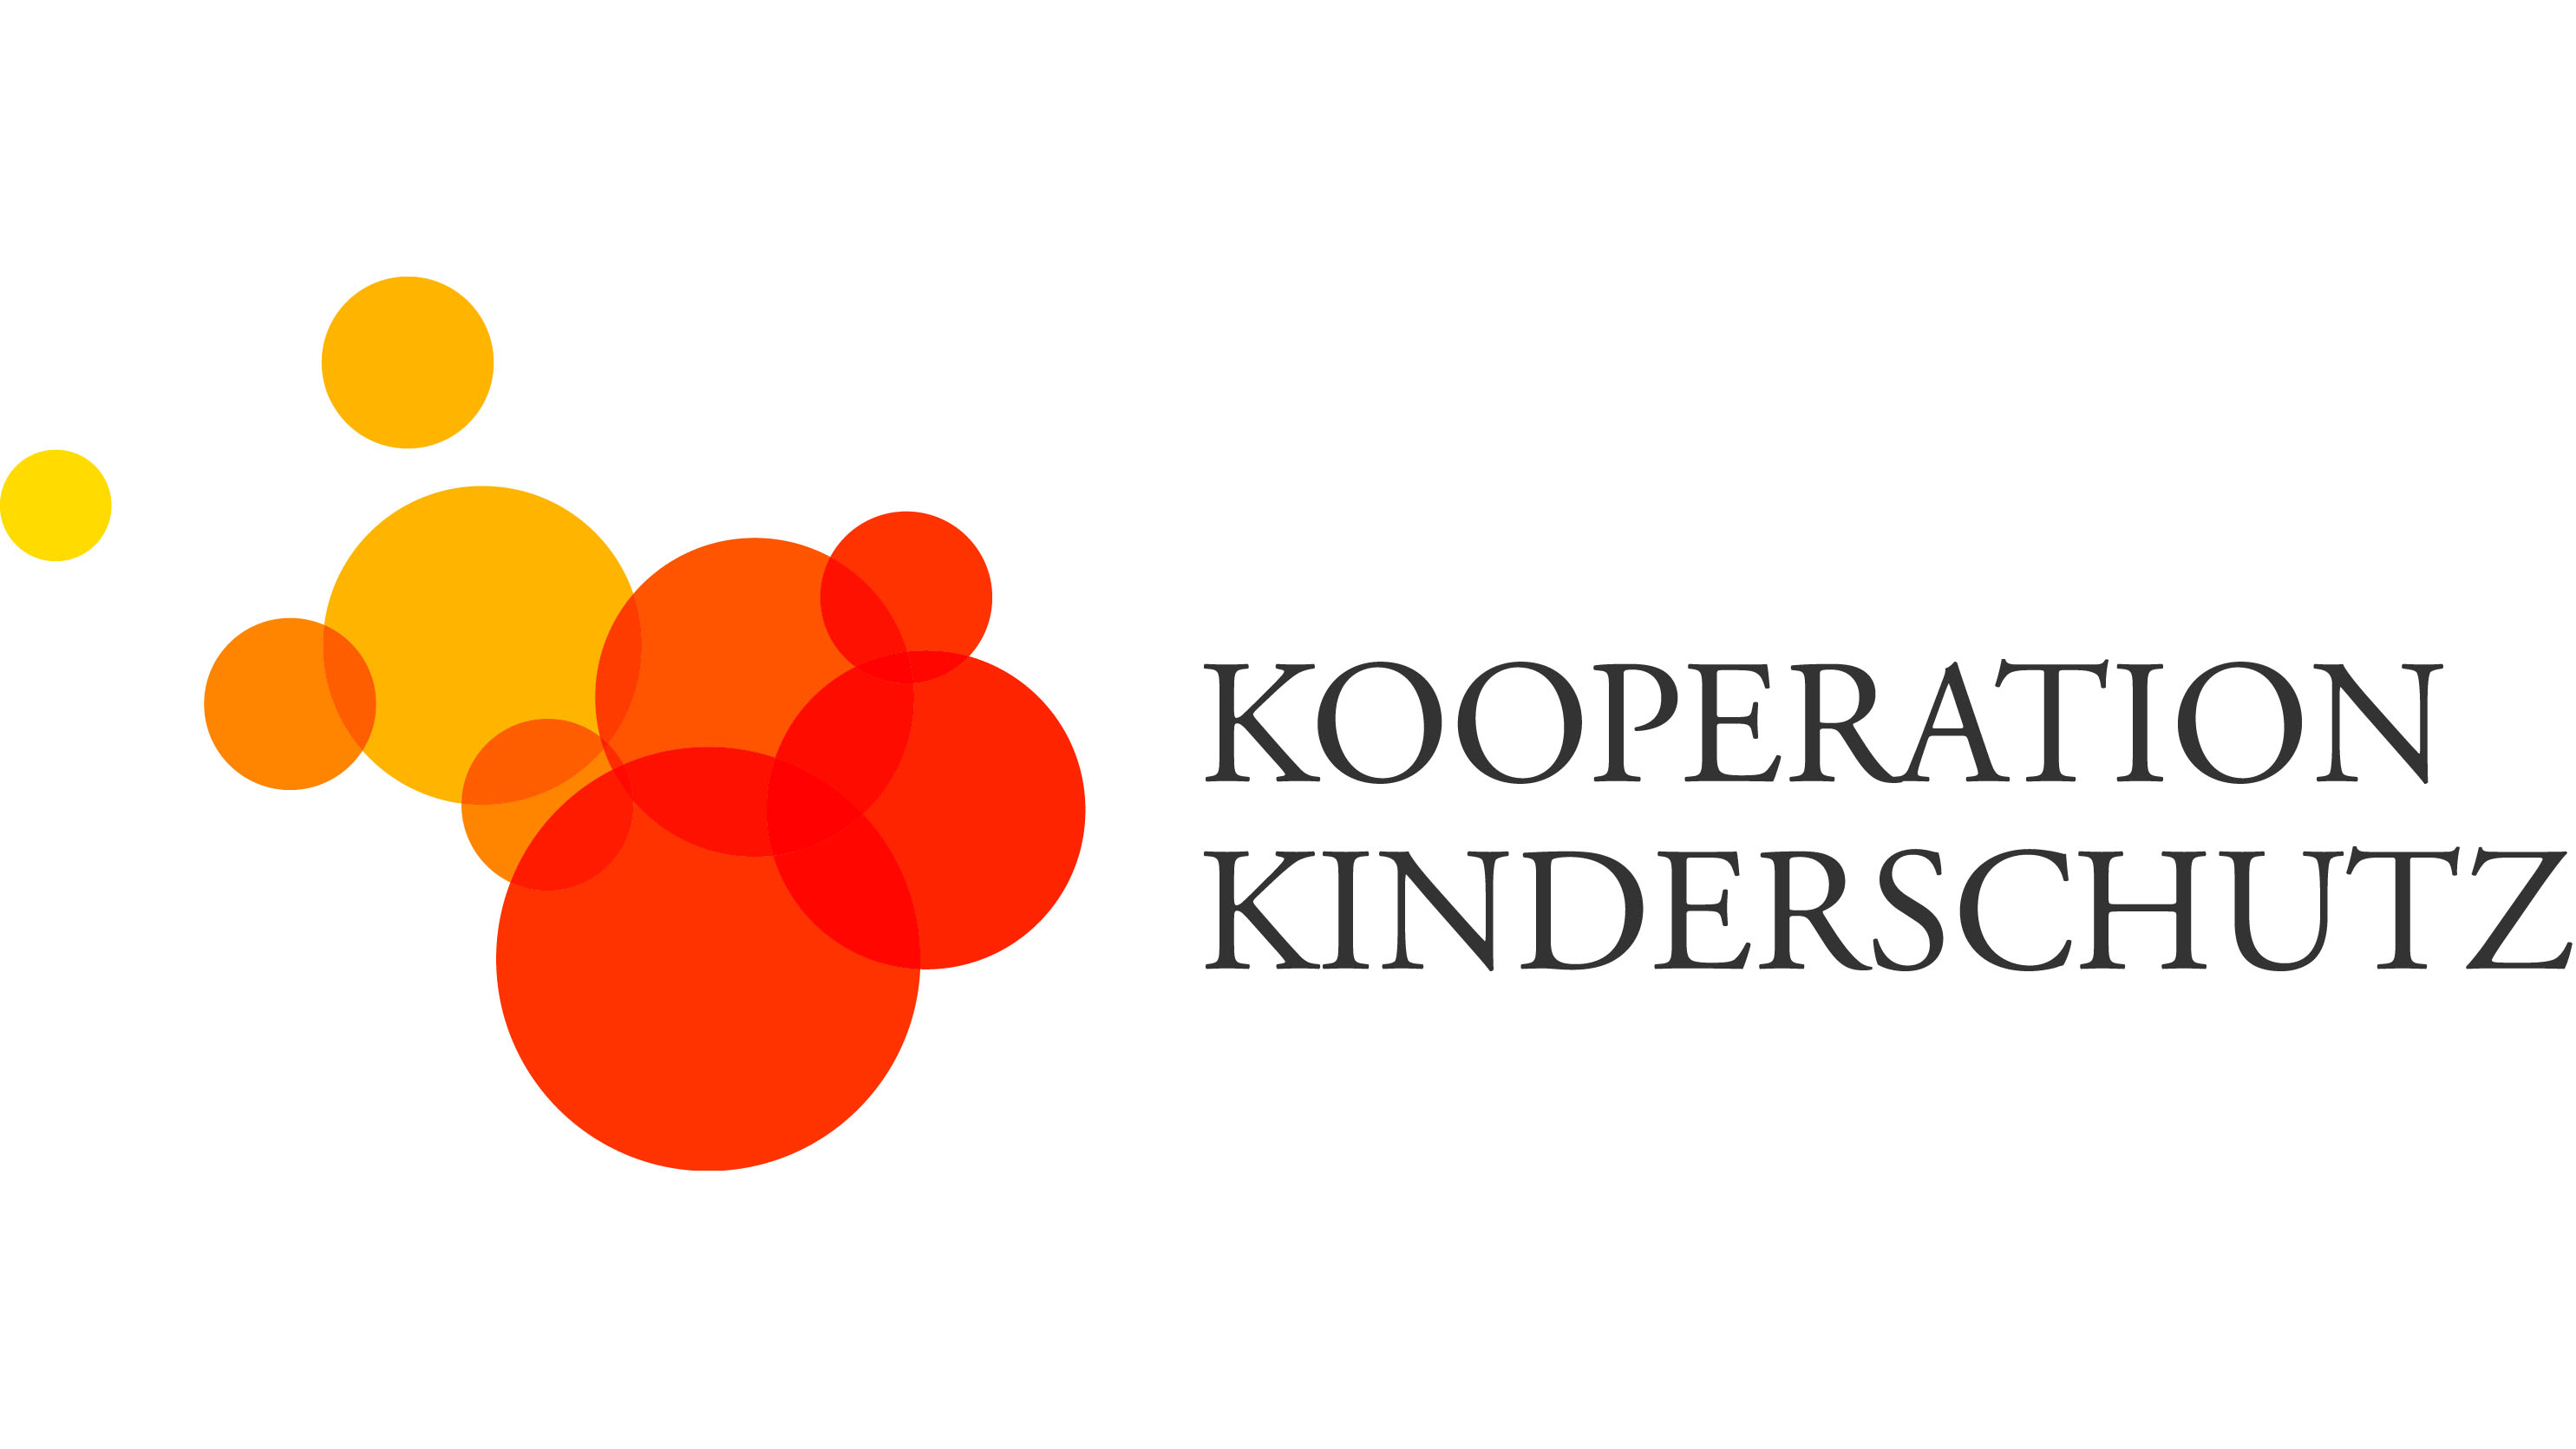 Mehrere überlappende Kreise in verschiedenen Orange-Tönen und der Schriftzug Kooperation Kinderschutz